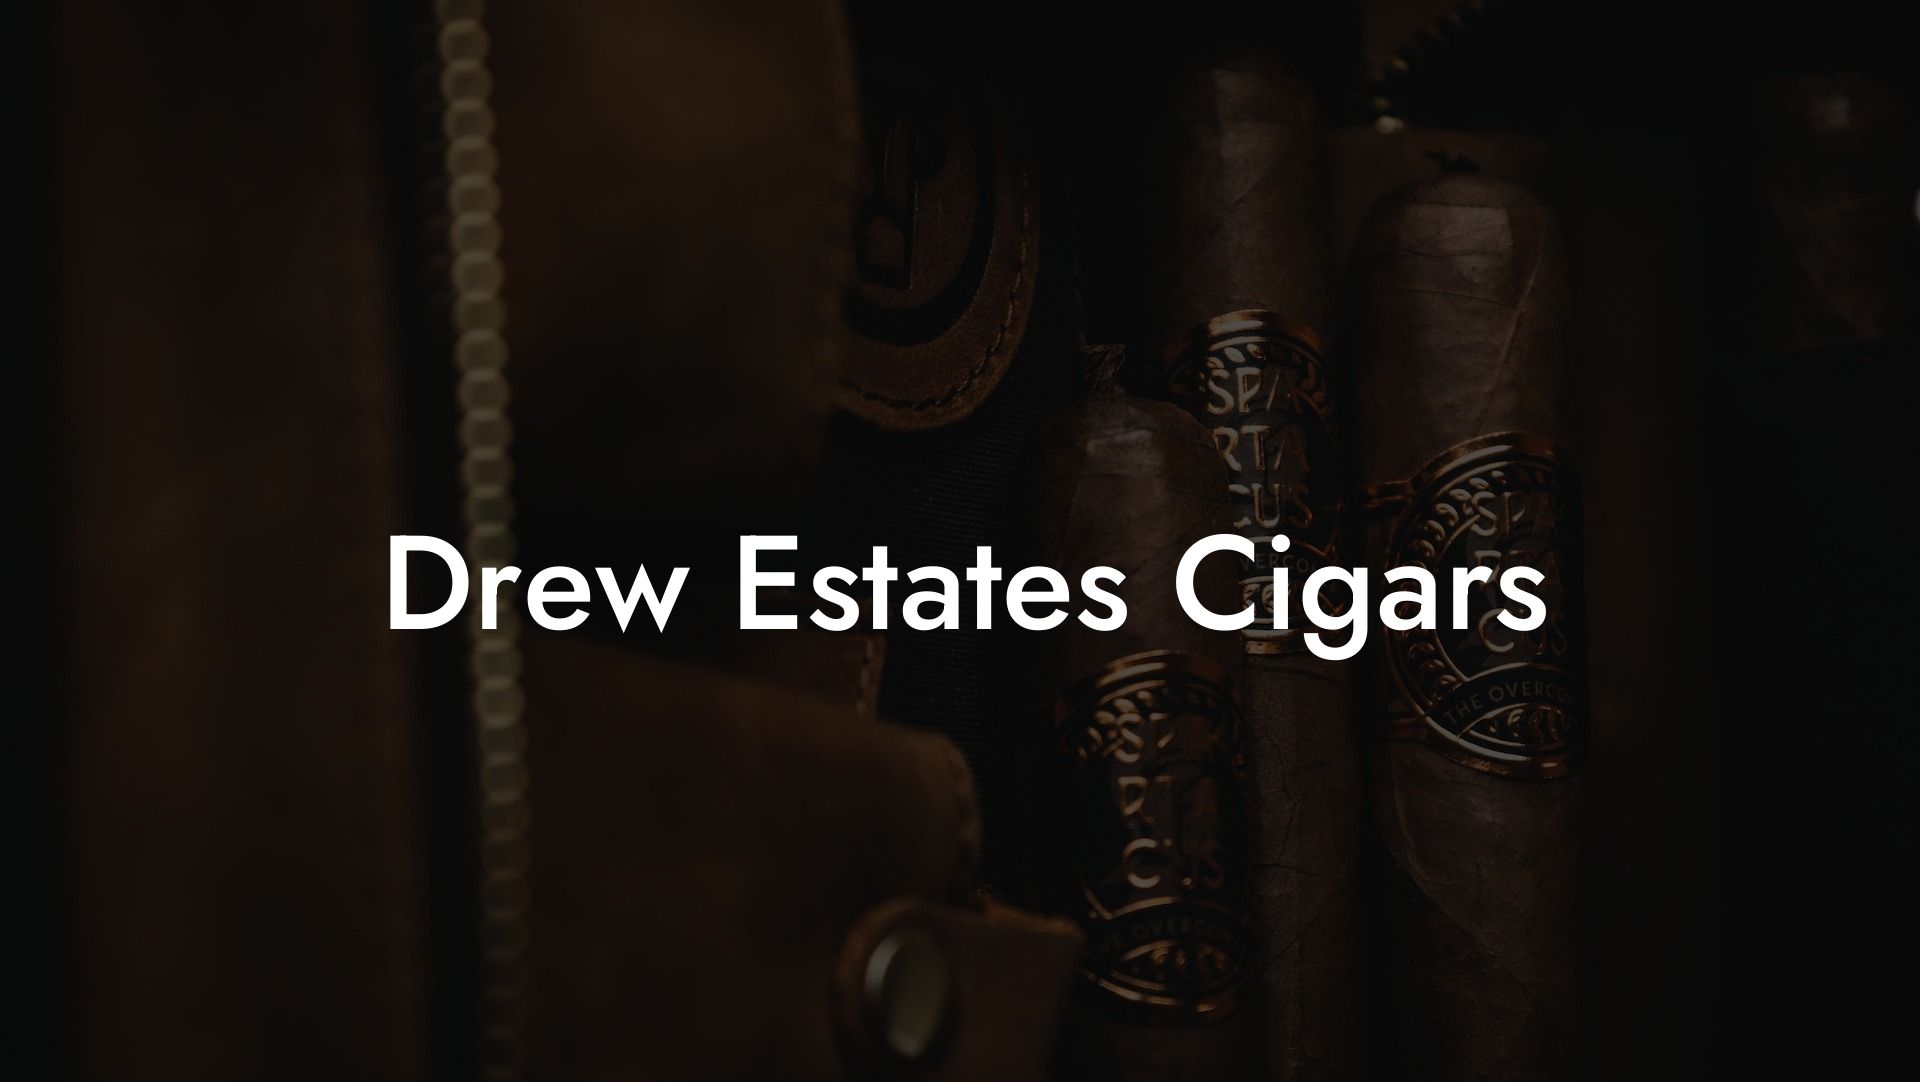 Drew Estates Cigars